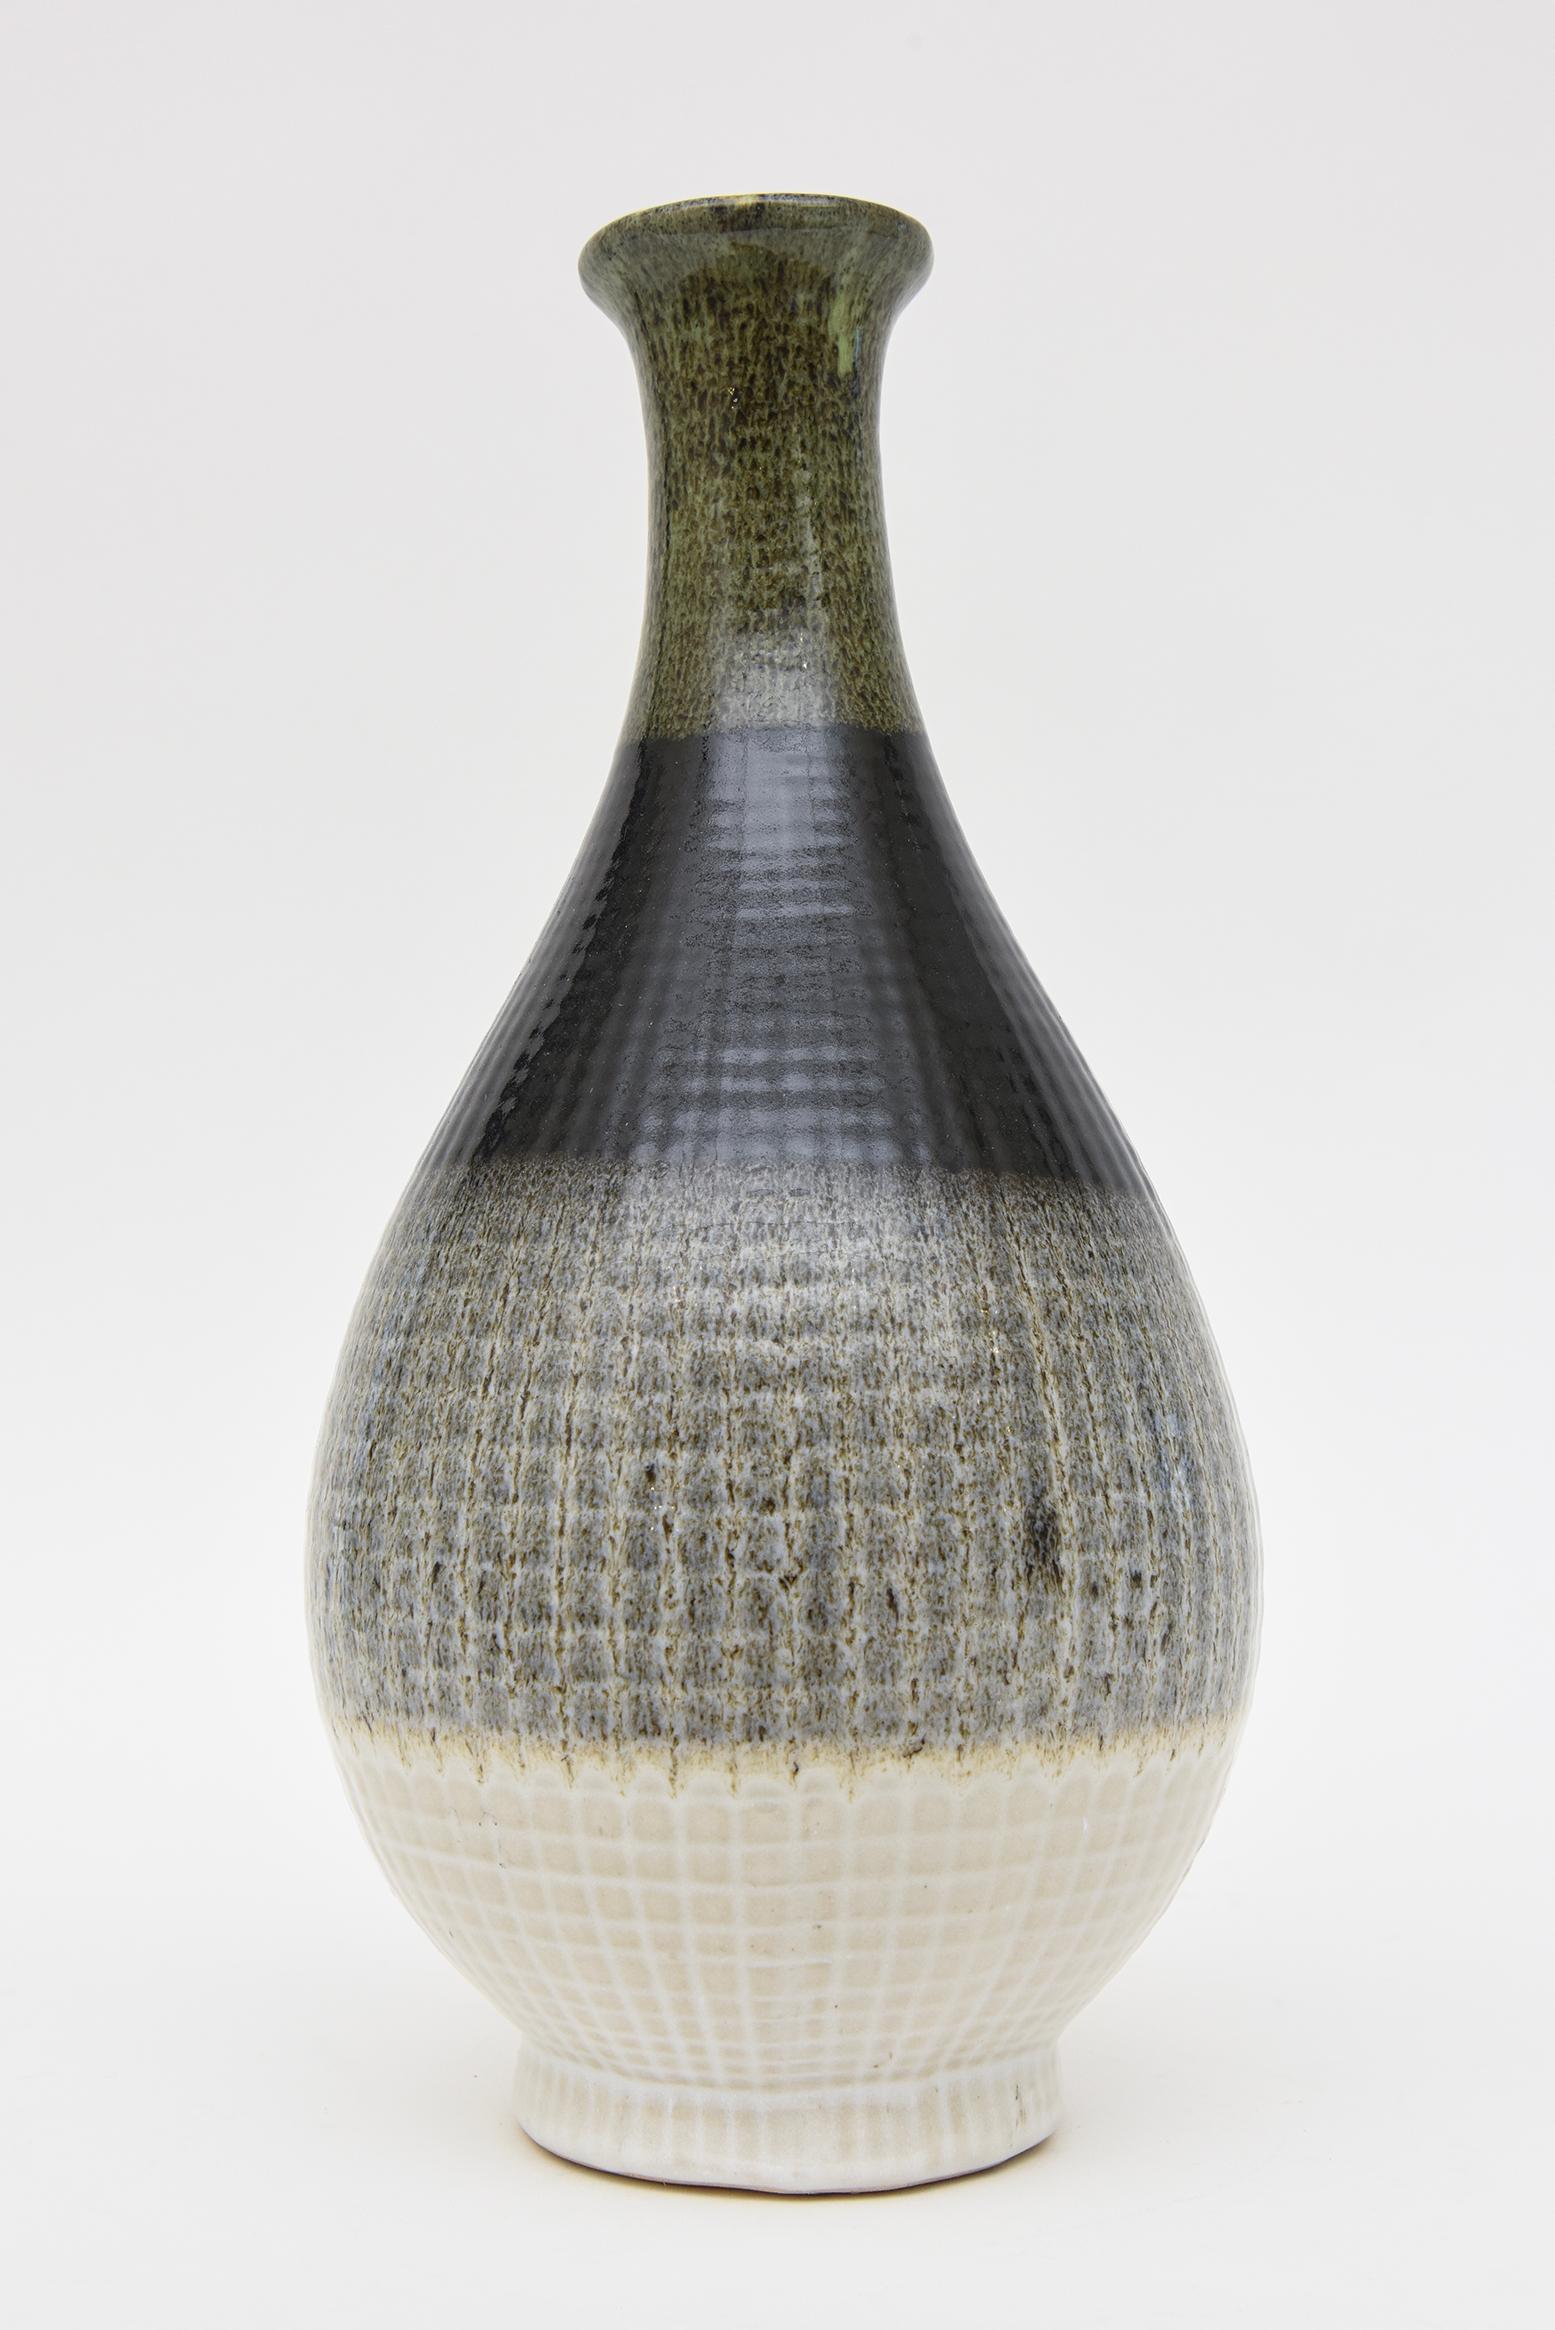 Cette grande bouteille ou récipient en céramique italienne émaillée est dans le style de Fantoni et présente des éléments de larges bandes de couleurs et de motifs. Les couleurs vont du vert au noir en passant par le charbon de bois et le blanc